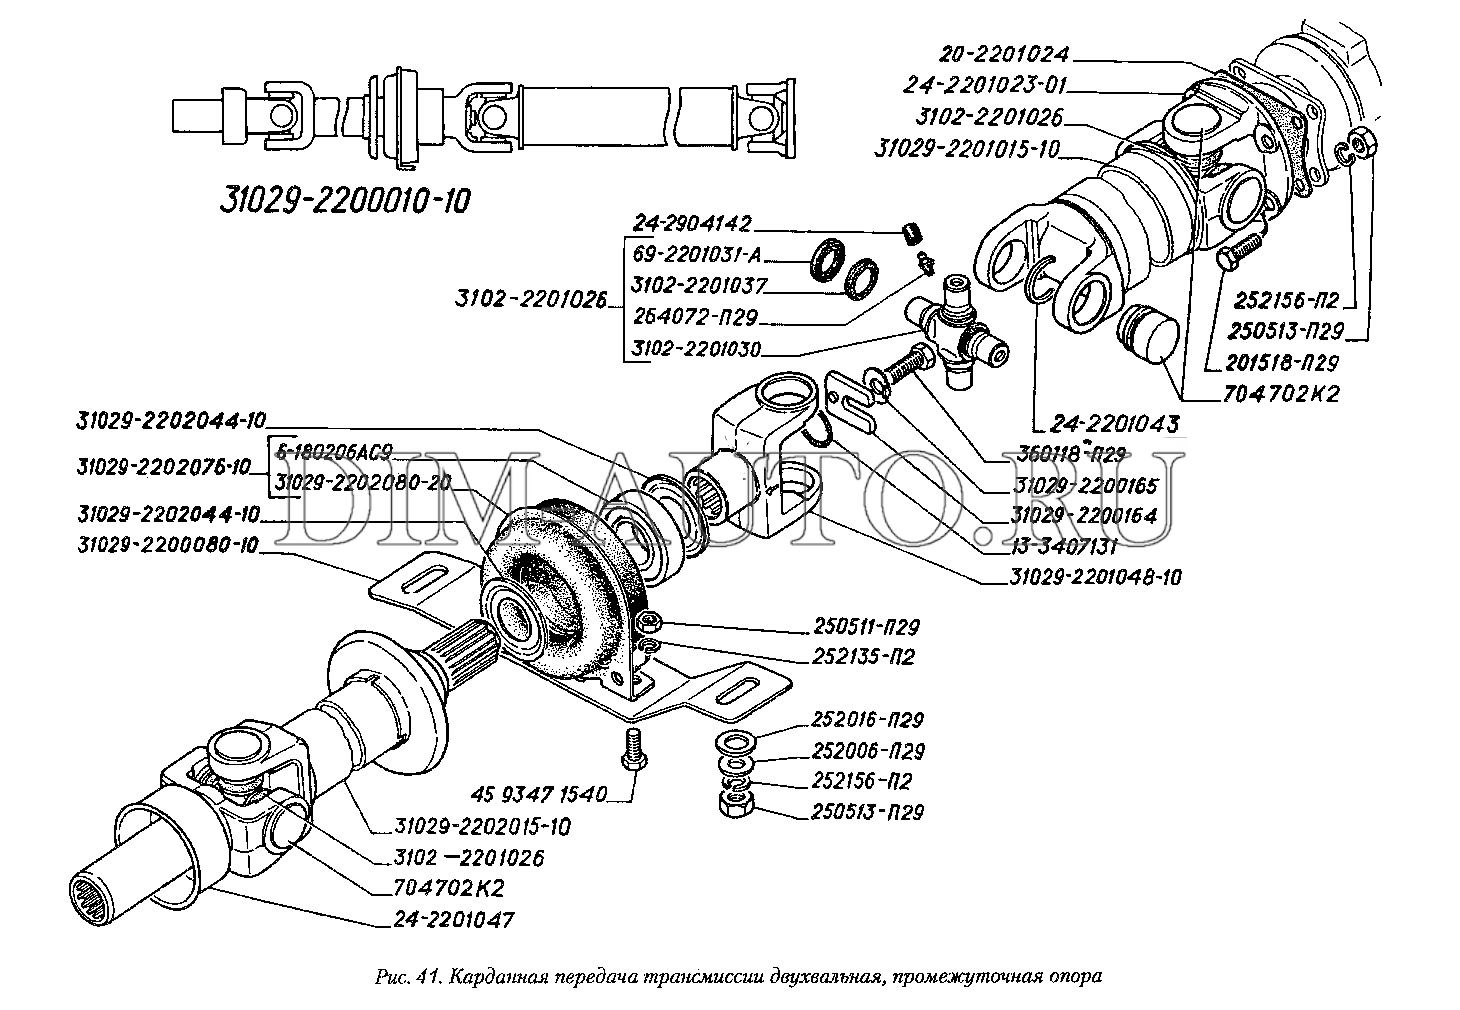 П п 29 31. Карданный вал ГАЗ 3110 схема. Карданный вал ГАЗ 3110 чертеж. Крепление кардана ГАЗ 3110. Карданная передача ГАЗ 3110 схема.